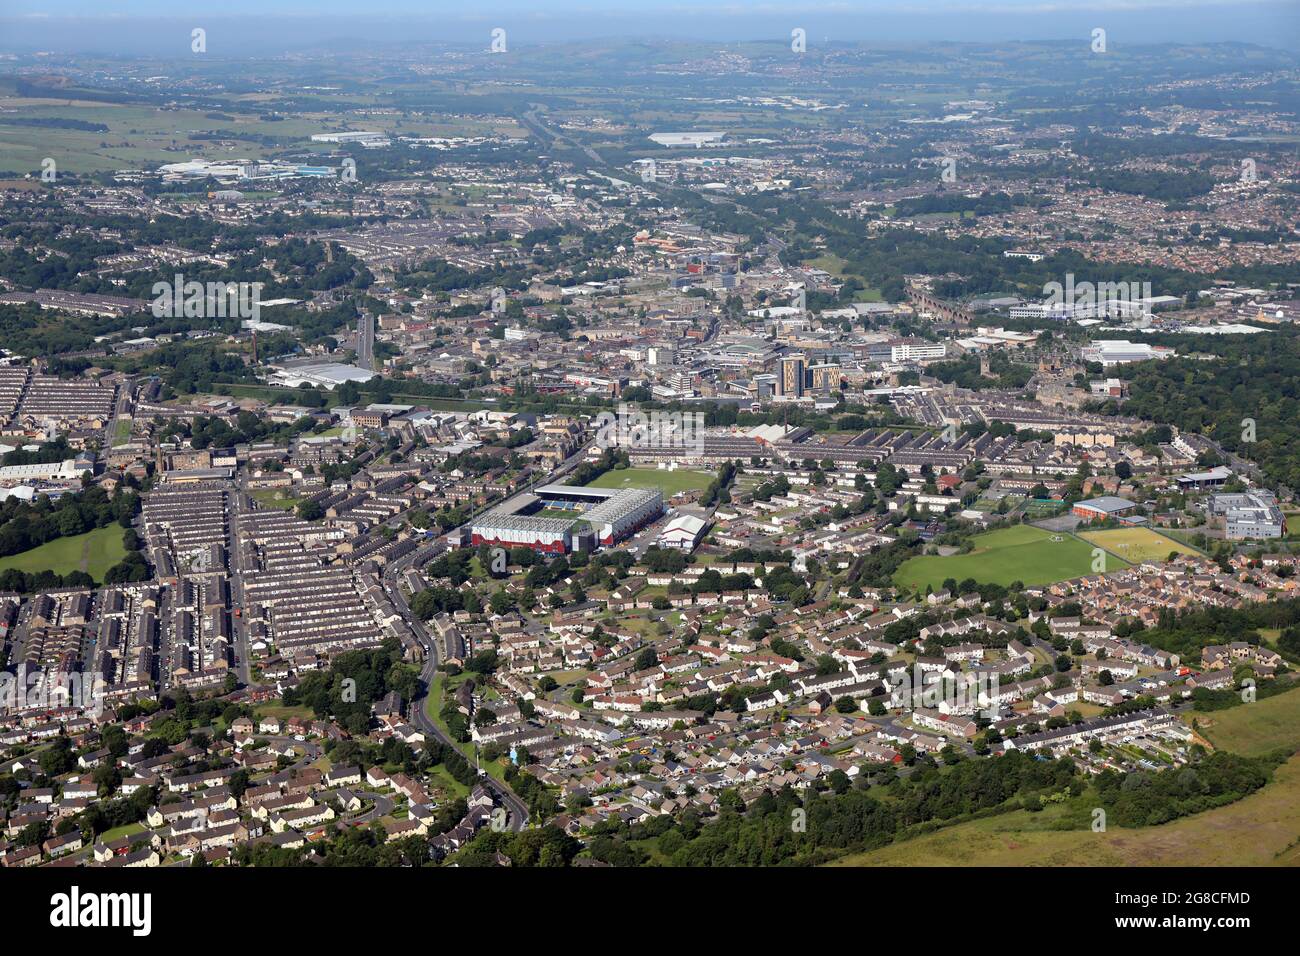 Vista aerea dello skyline di Burnley con lo stadio di calcio Turf Moor prominente Foto Stock